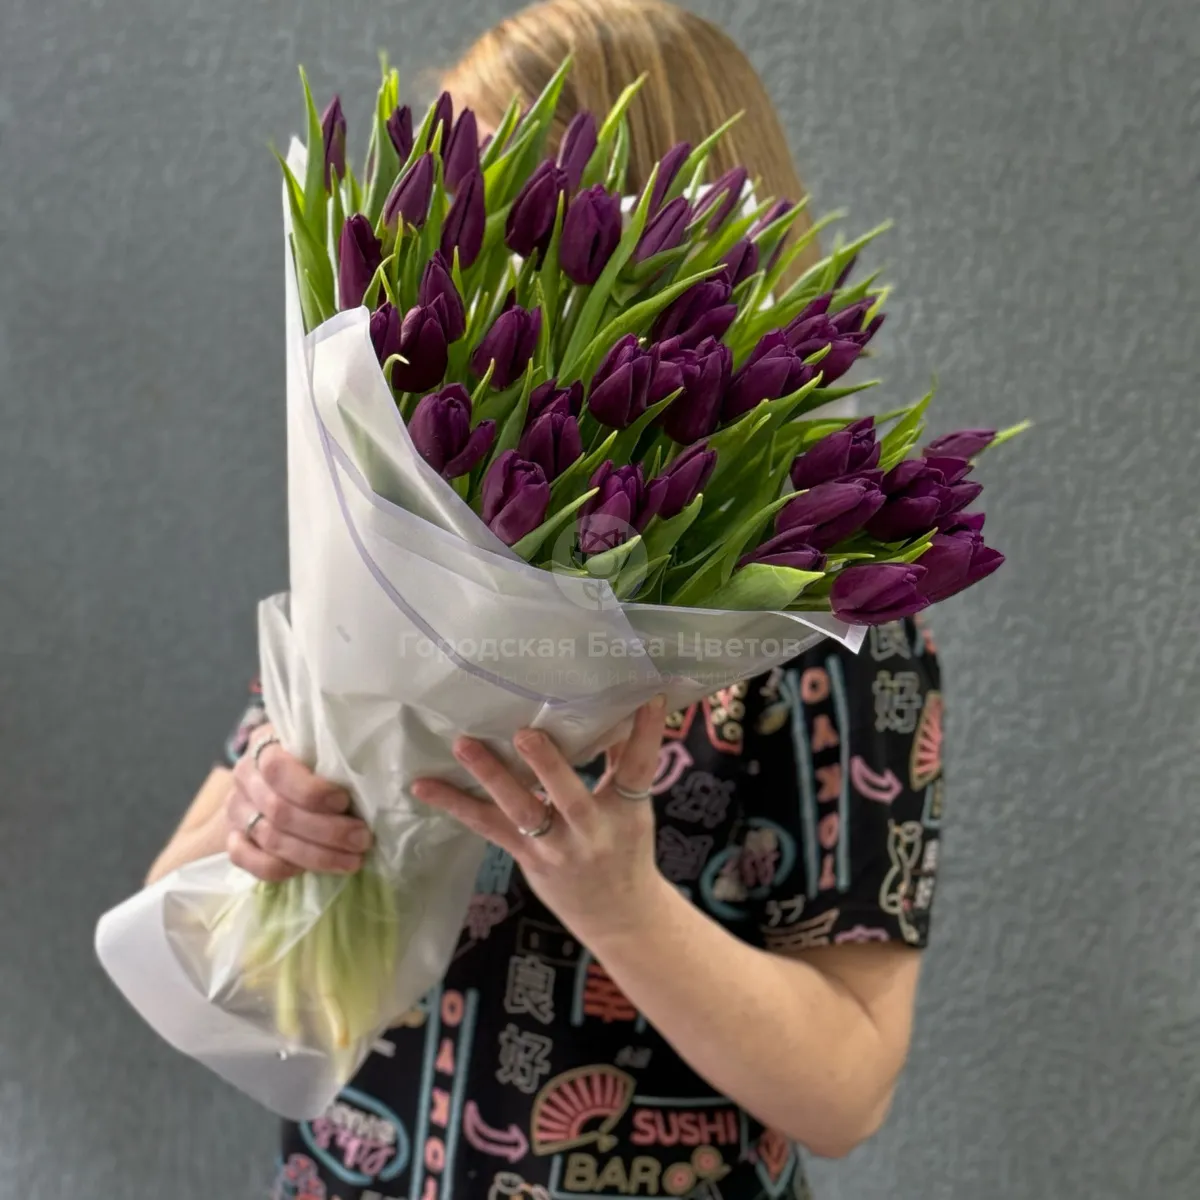 51 бордово-фиолетовый тюльпан